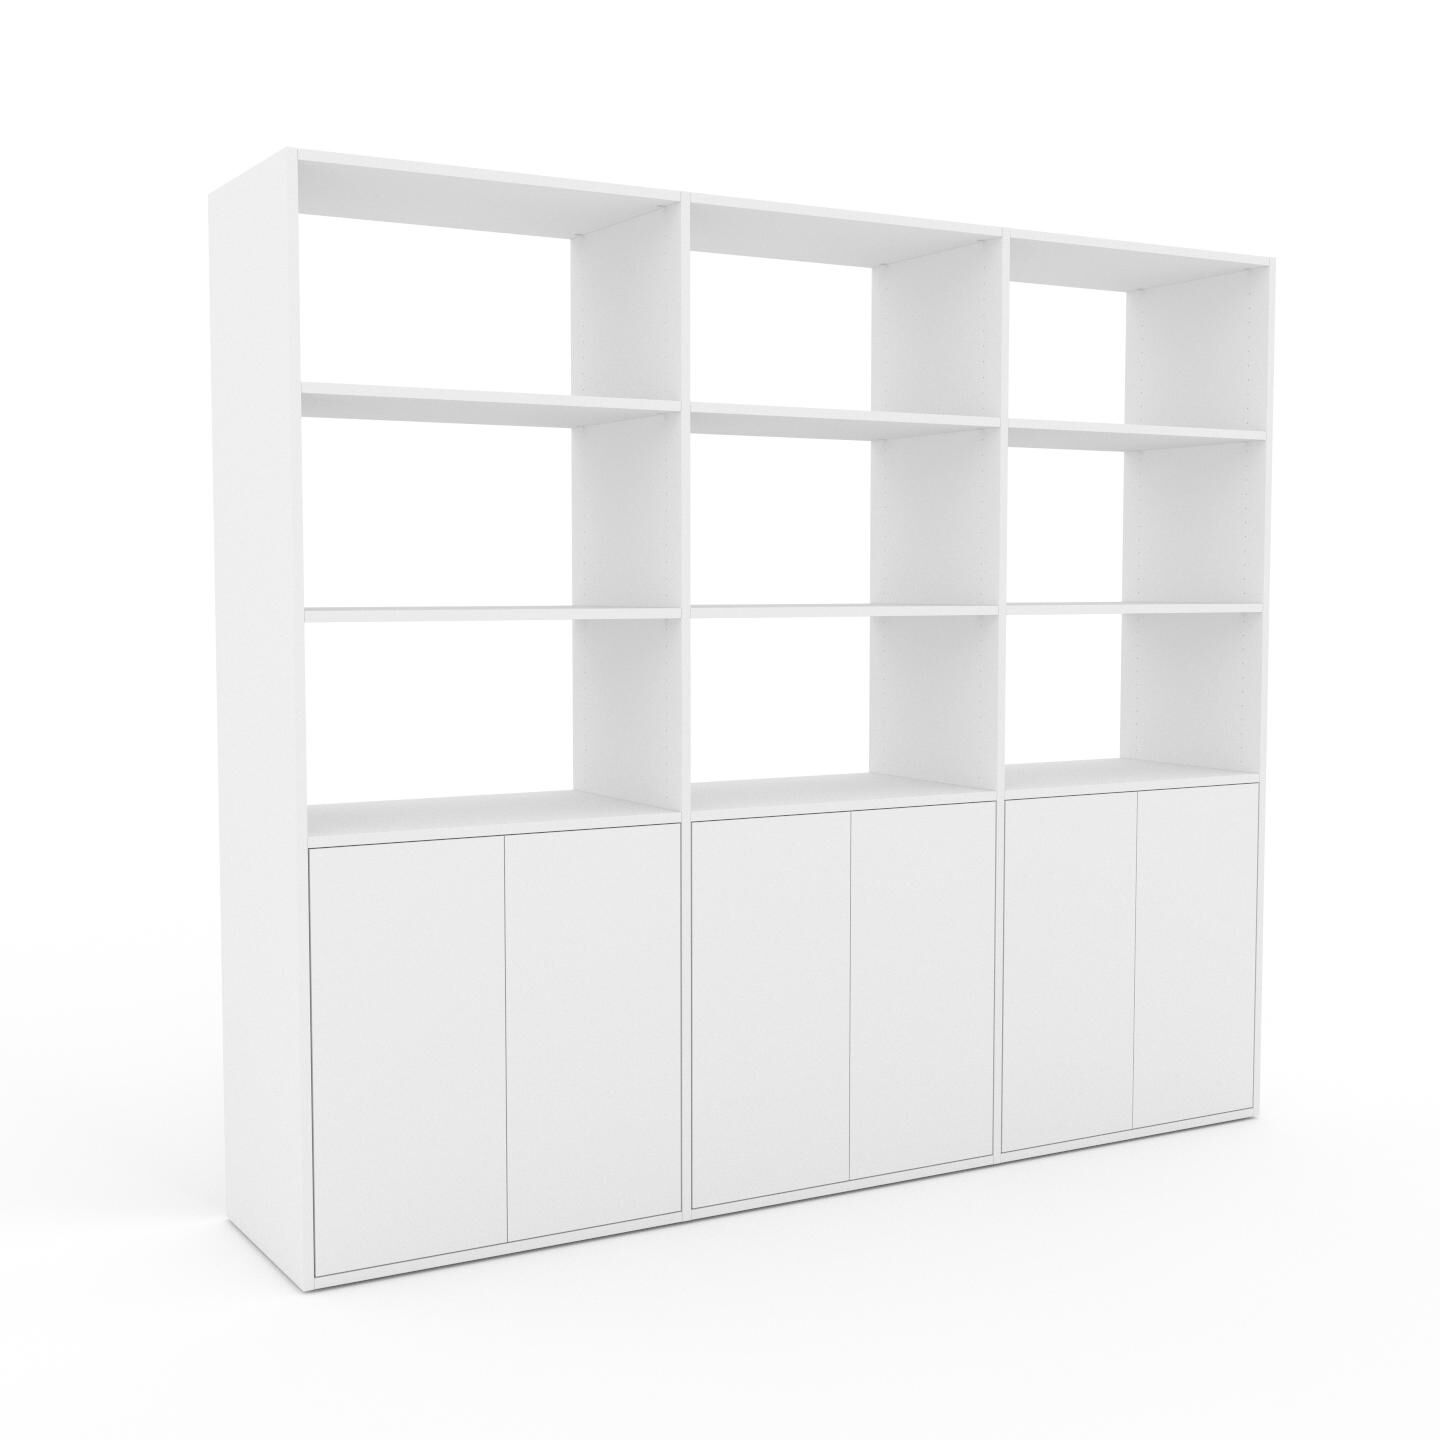 MYCS Bücherregal Weiß - Modernes Regal für Bücher: Türen in Weiß - 226 x 195 x 47 cm, Individuell konfigurierbar